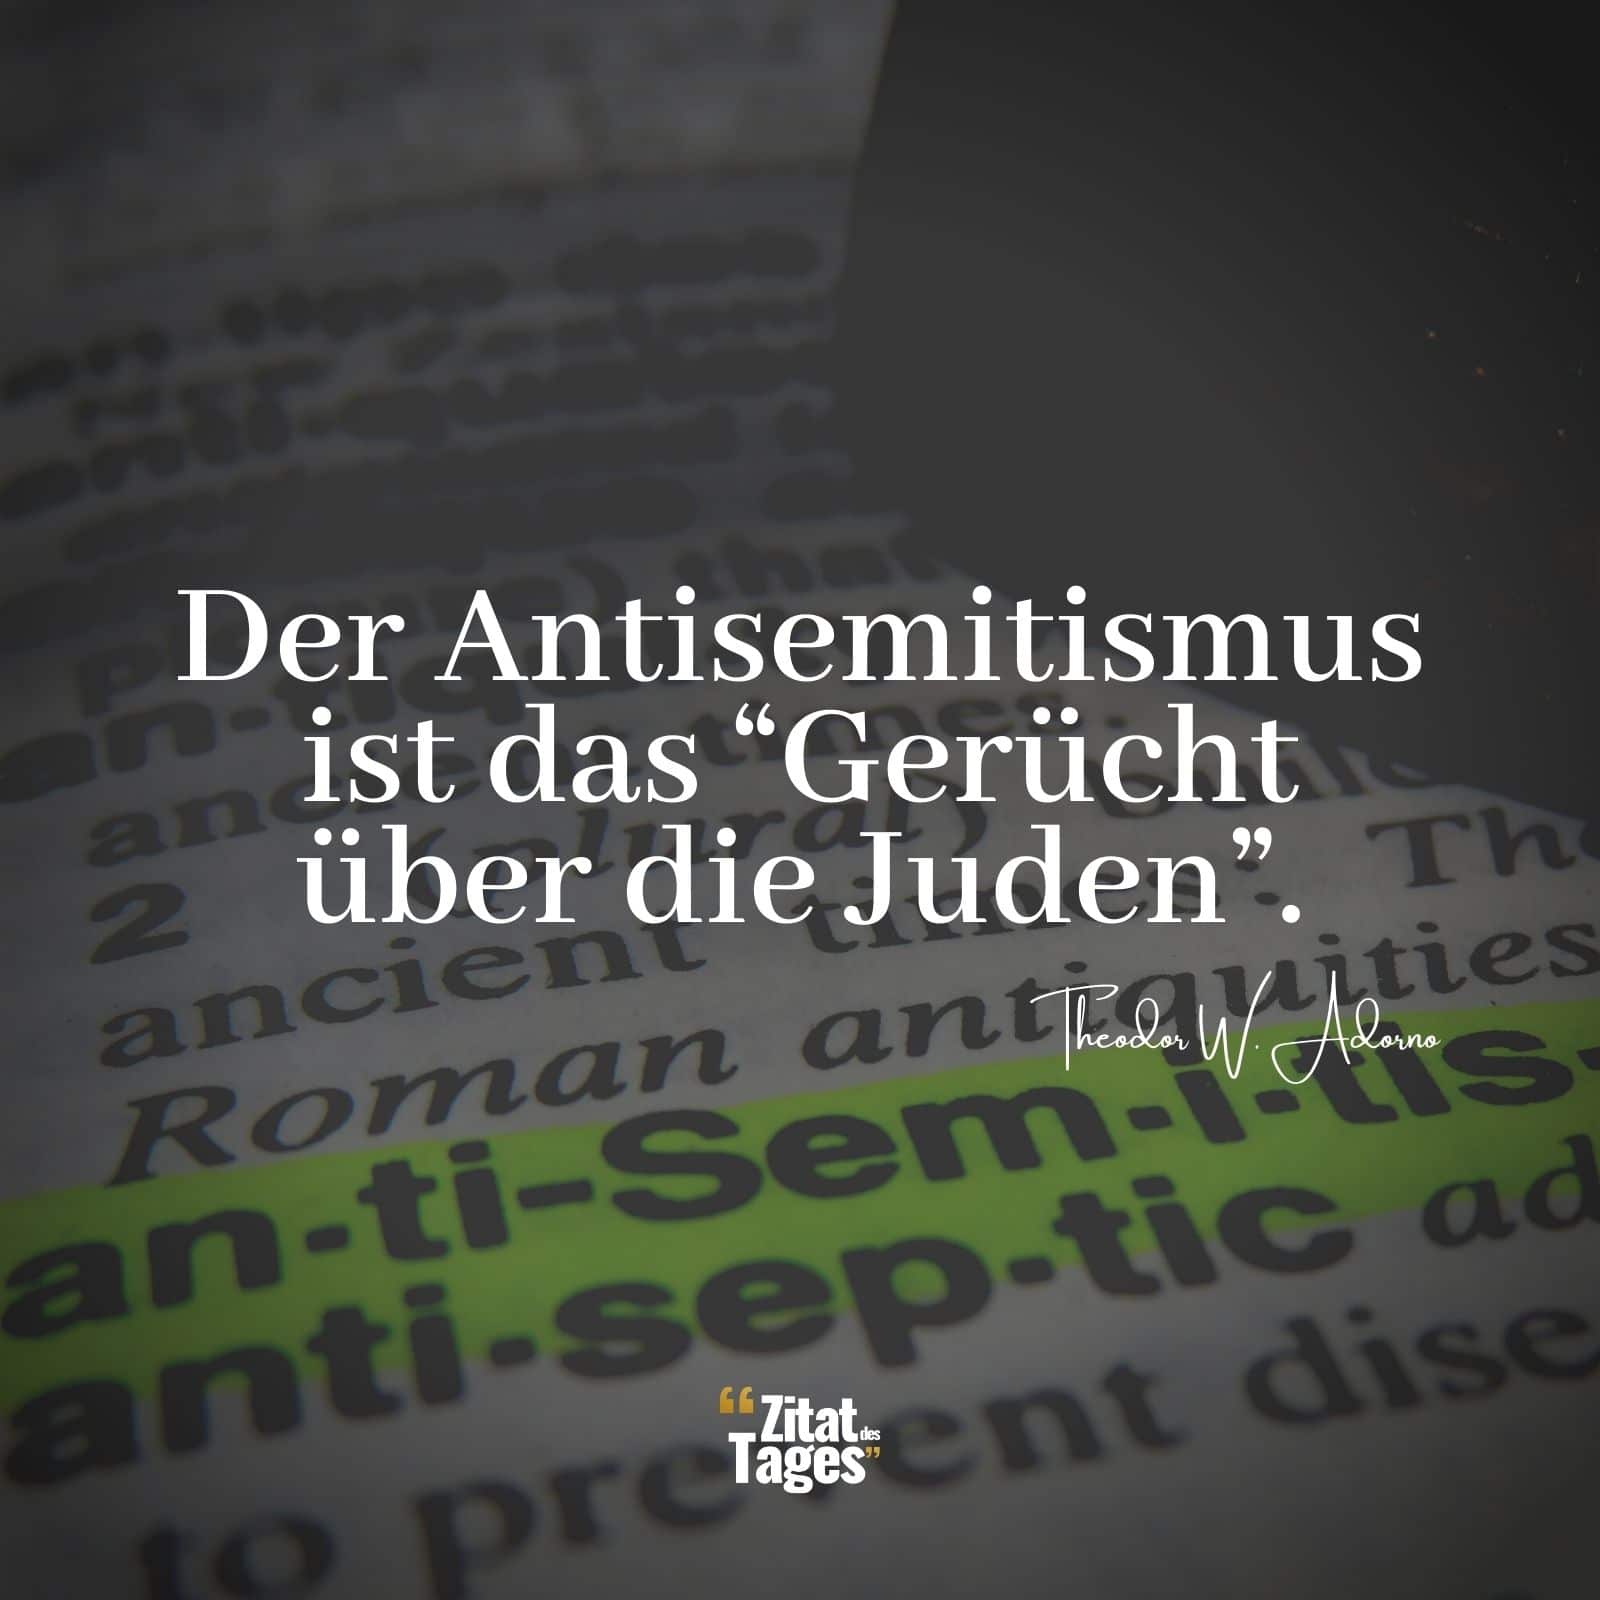 Der Antisemitismus ist das Gerücht über die Juden. - Theodor W. Adorno